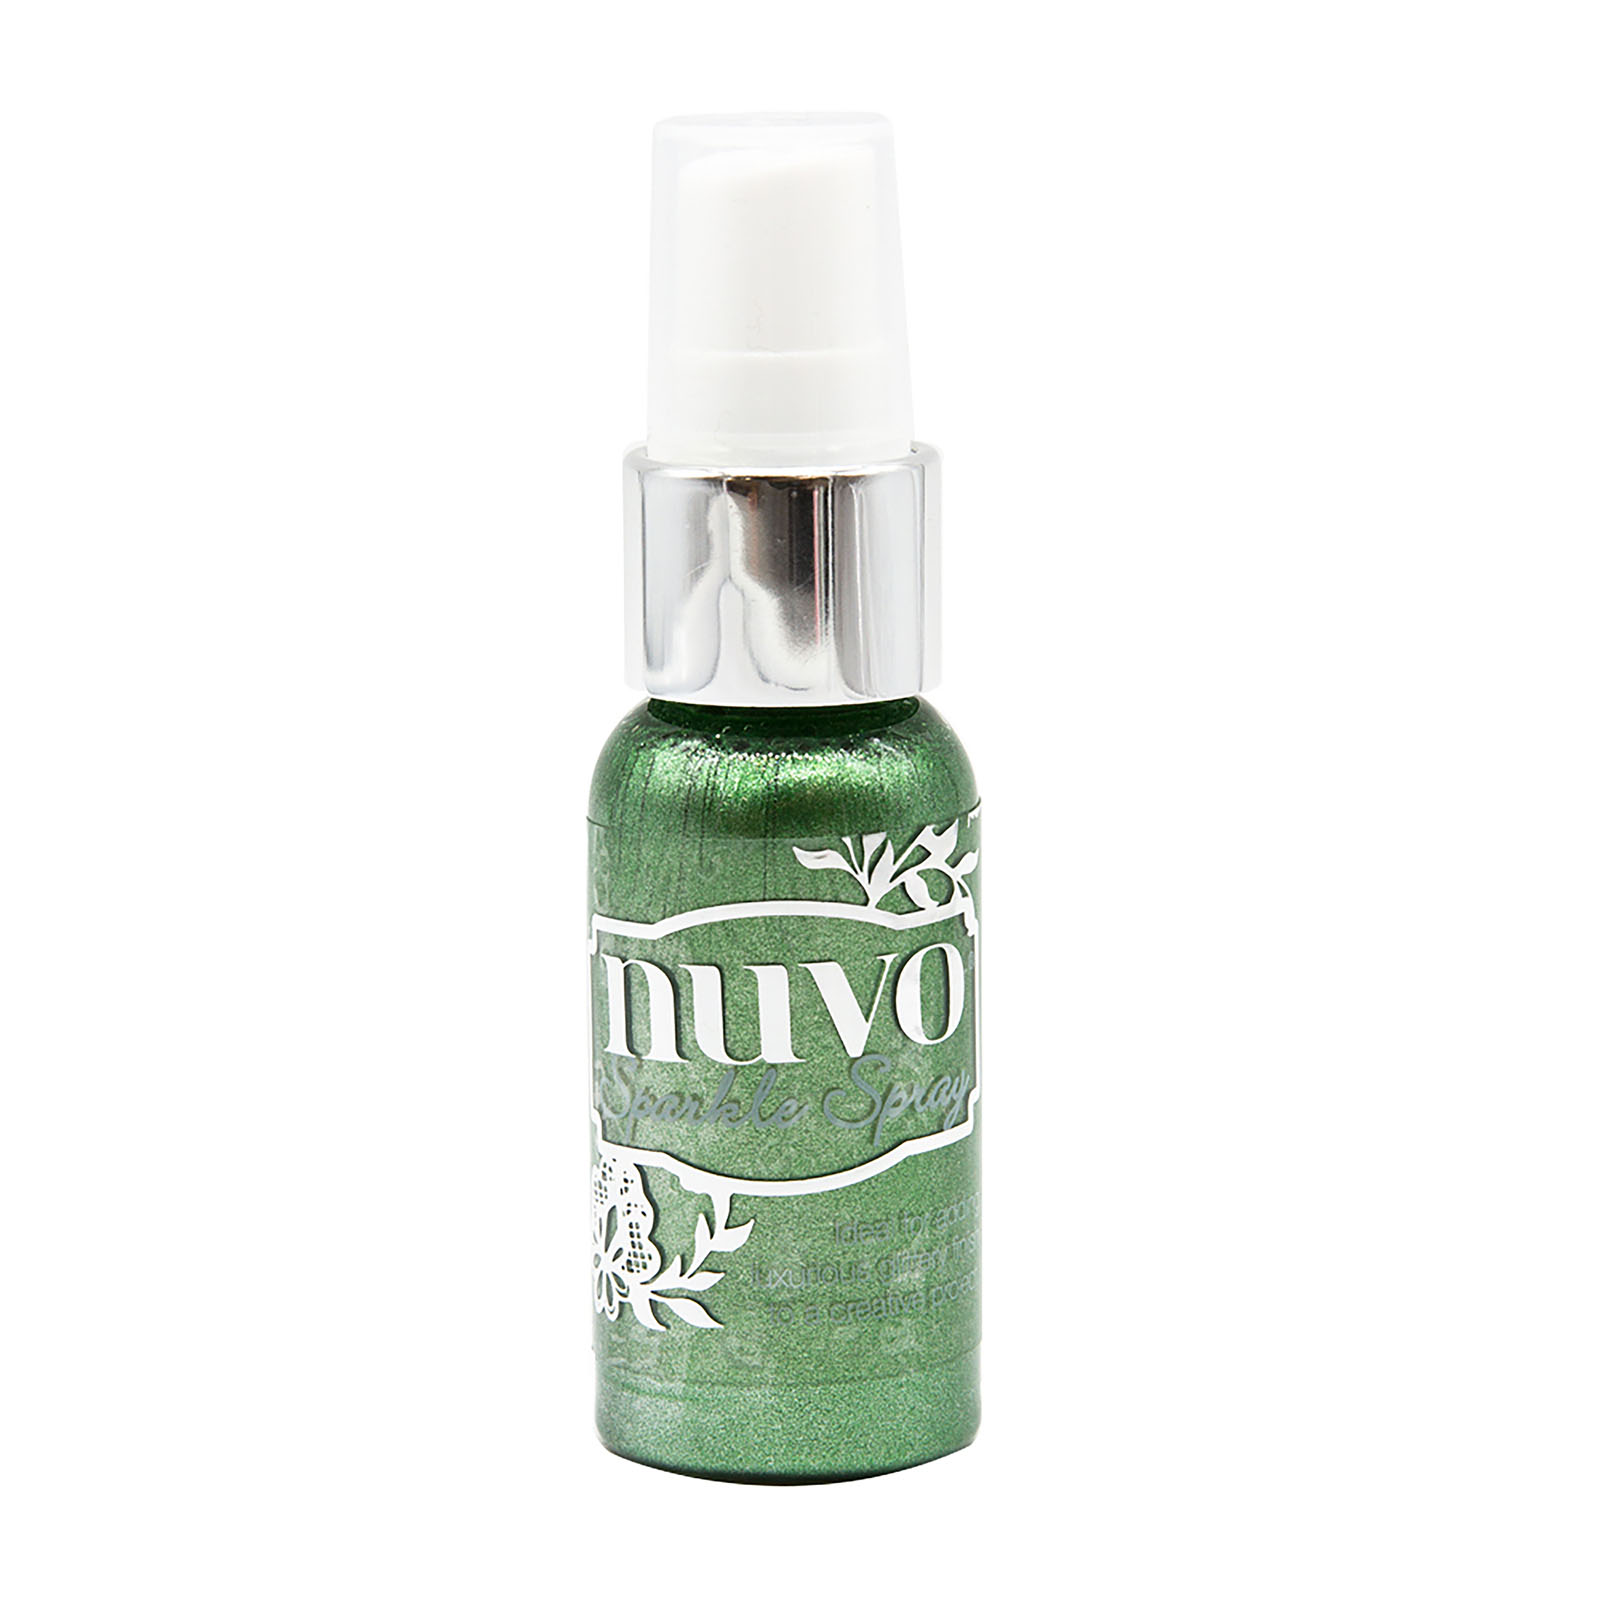 Nuvo • Sparkle spray Wispy willow